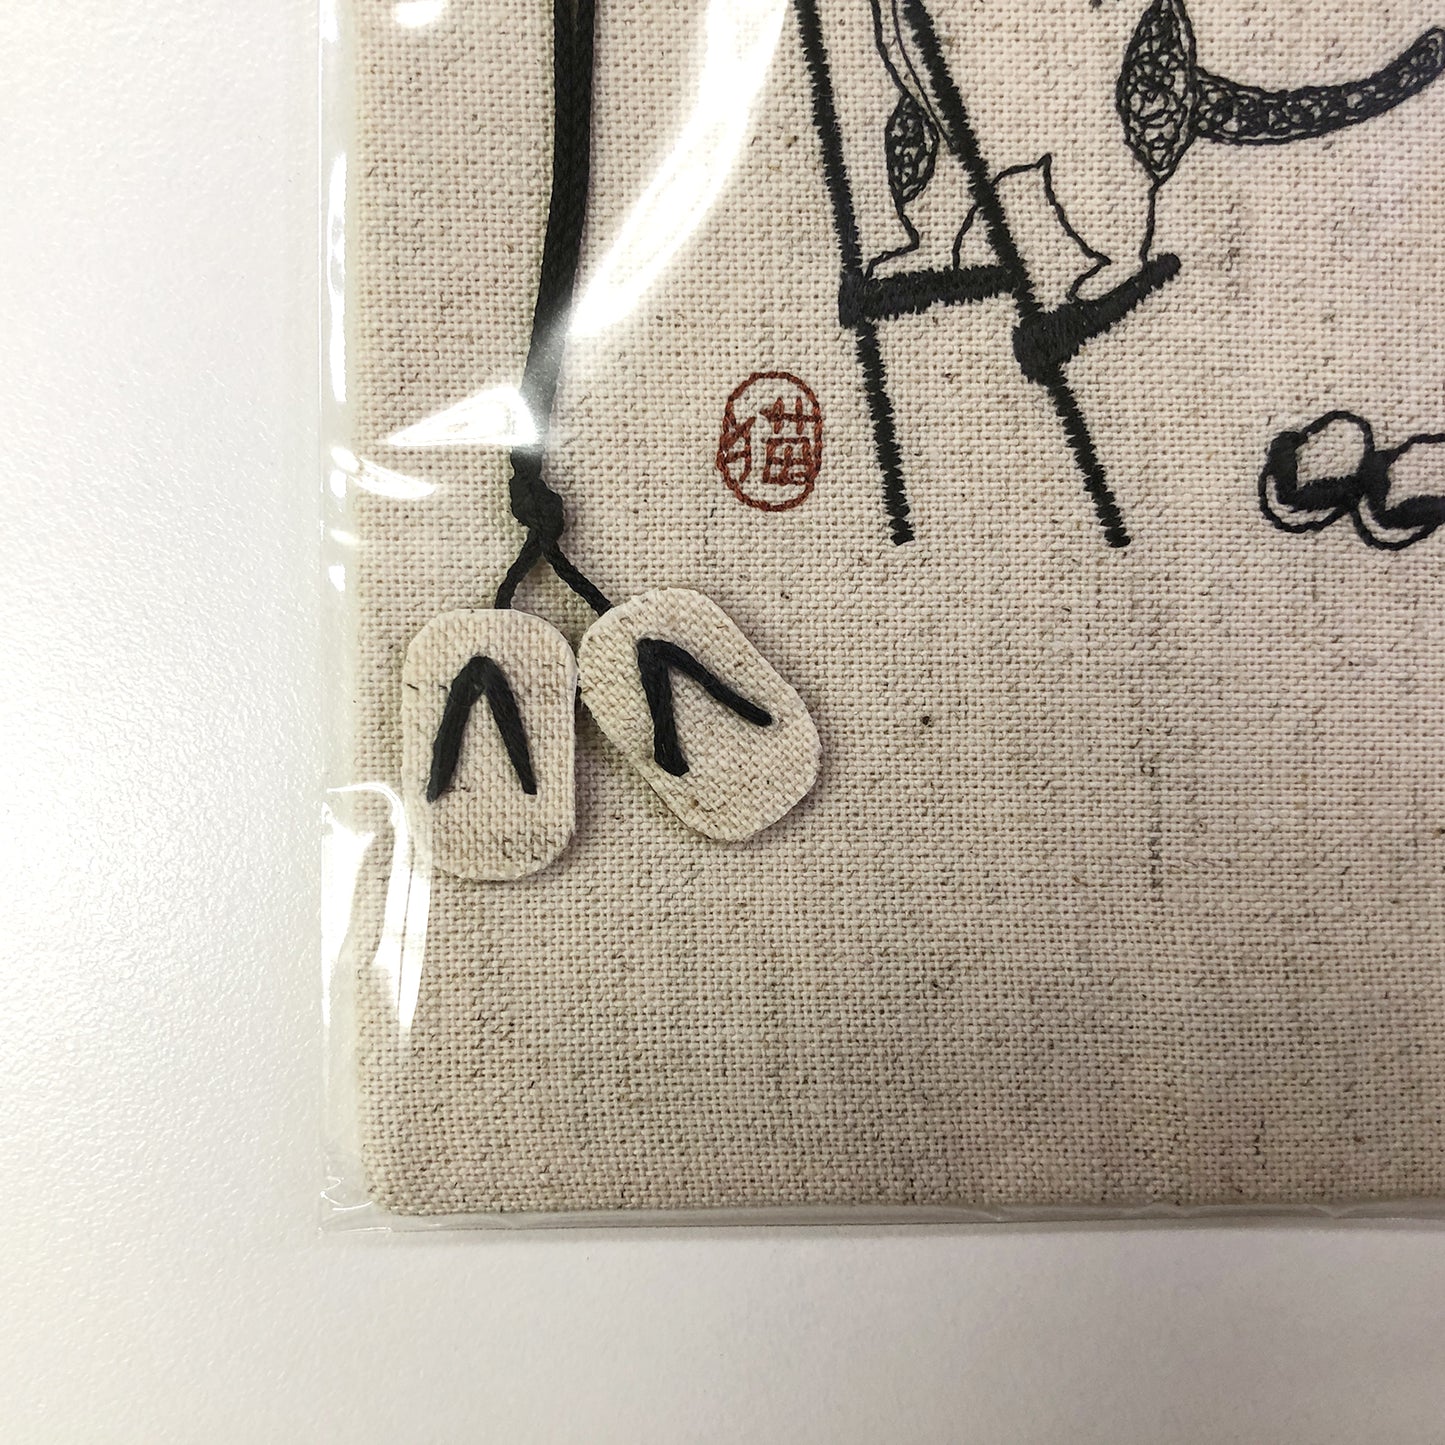 sheepsleep ブックカバー 文庫判 「竹馬ねこ」 刺繍 日本製